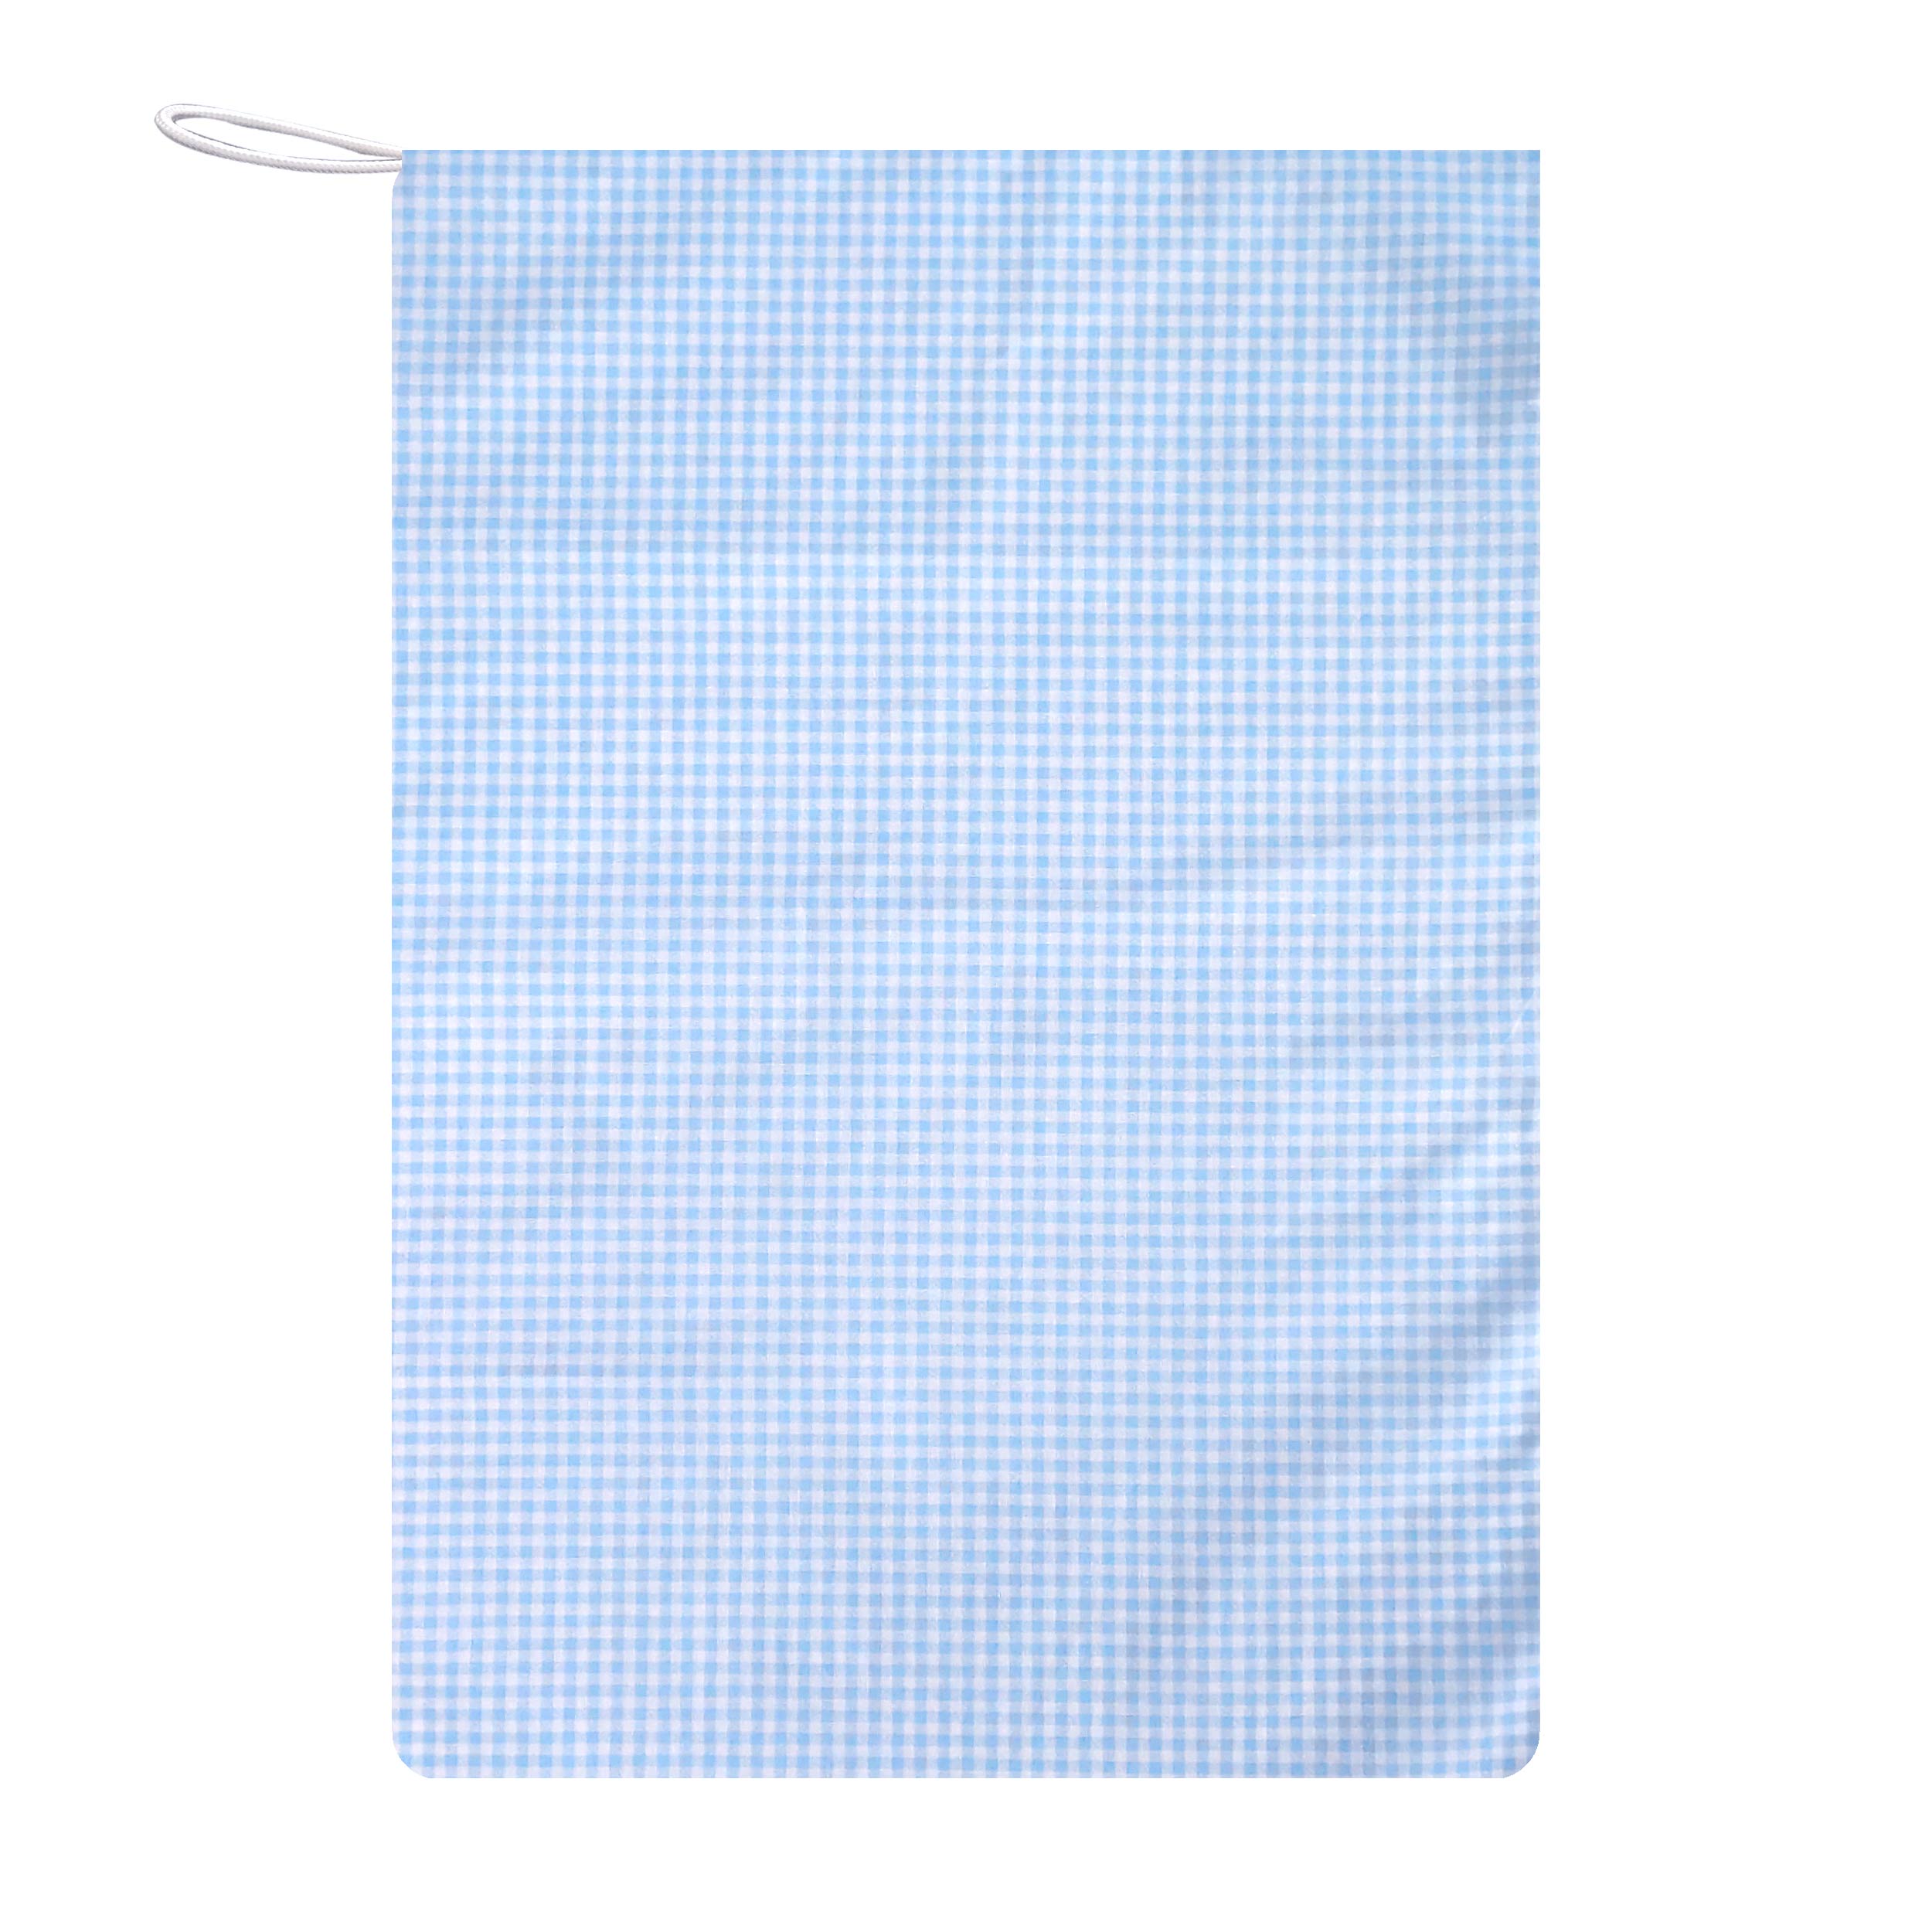 sacchetto asilo fantasia quadretto bianco sfondo azzurro (1)